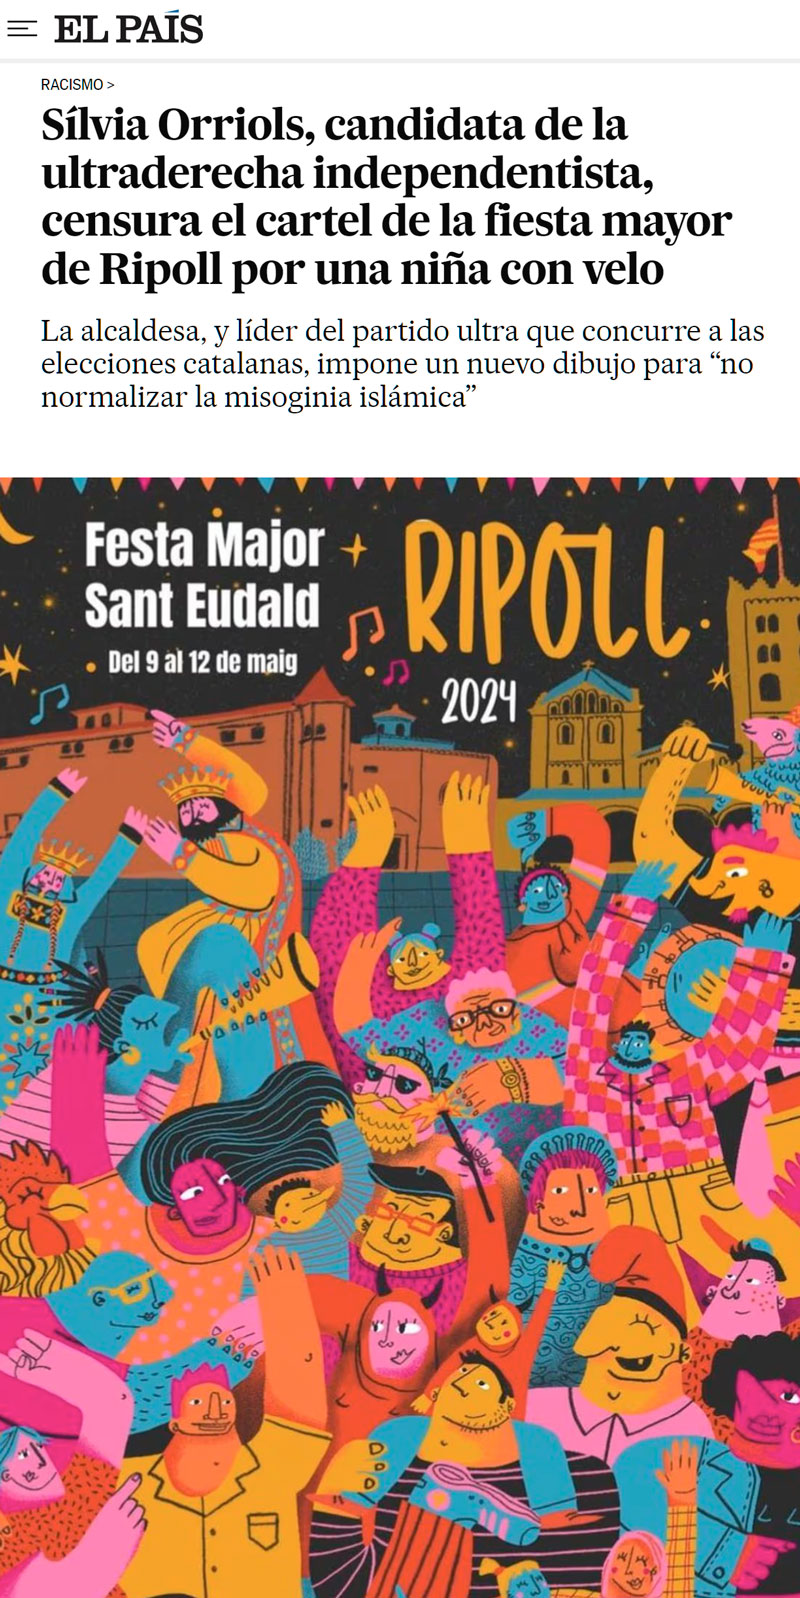 Silvia Orrios censura el cartel de la fiesta mayor de Ripoll por una niña con velo.